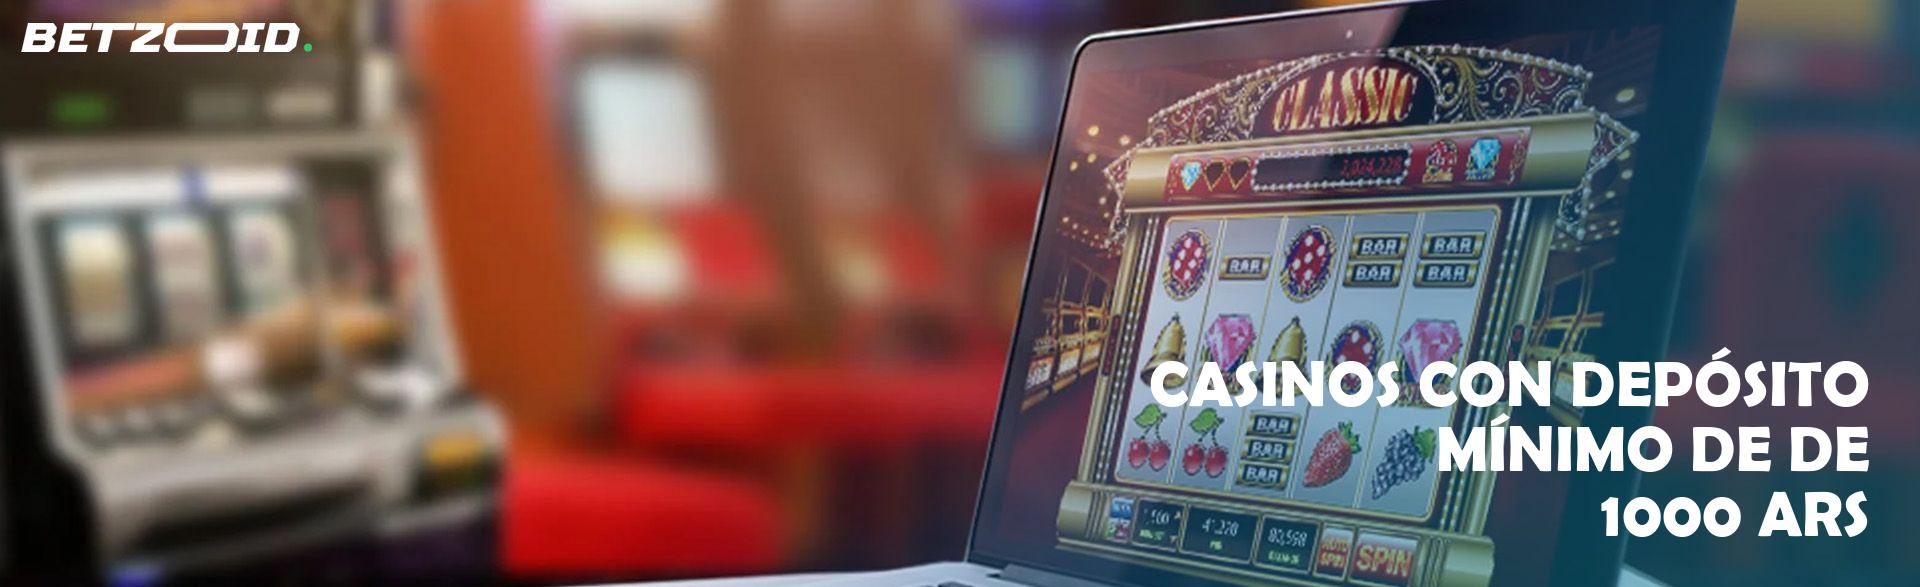 Casinos con Depósito Mínimo de 1000 ARS.